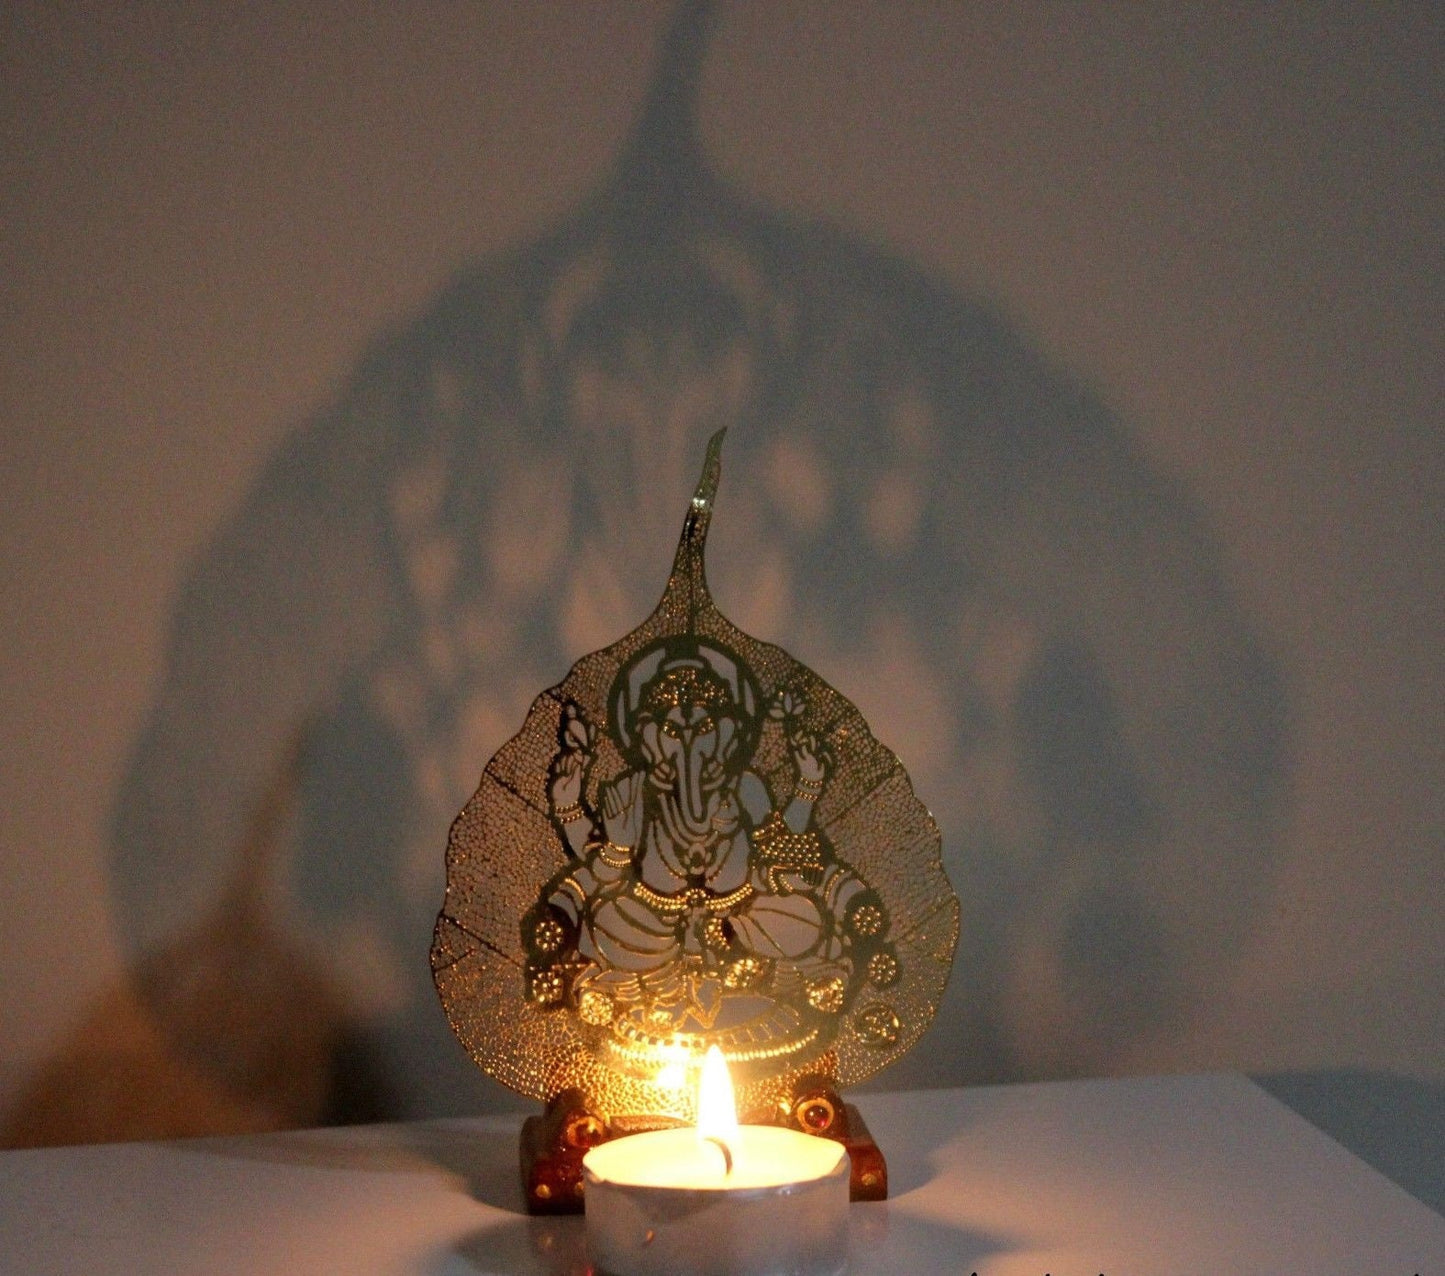 Ganesha Metal Leaf for meditation, healing and Reiki - Metal carved Leaf Ganesh - Can be used as Tea Light Candle Holder - Gift for Him/Her